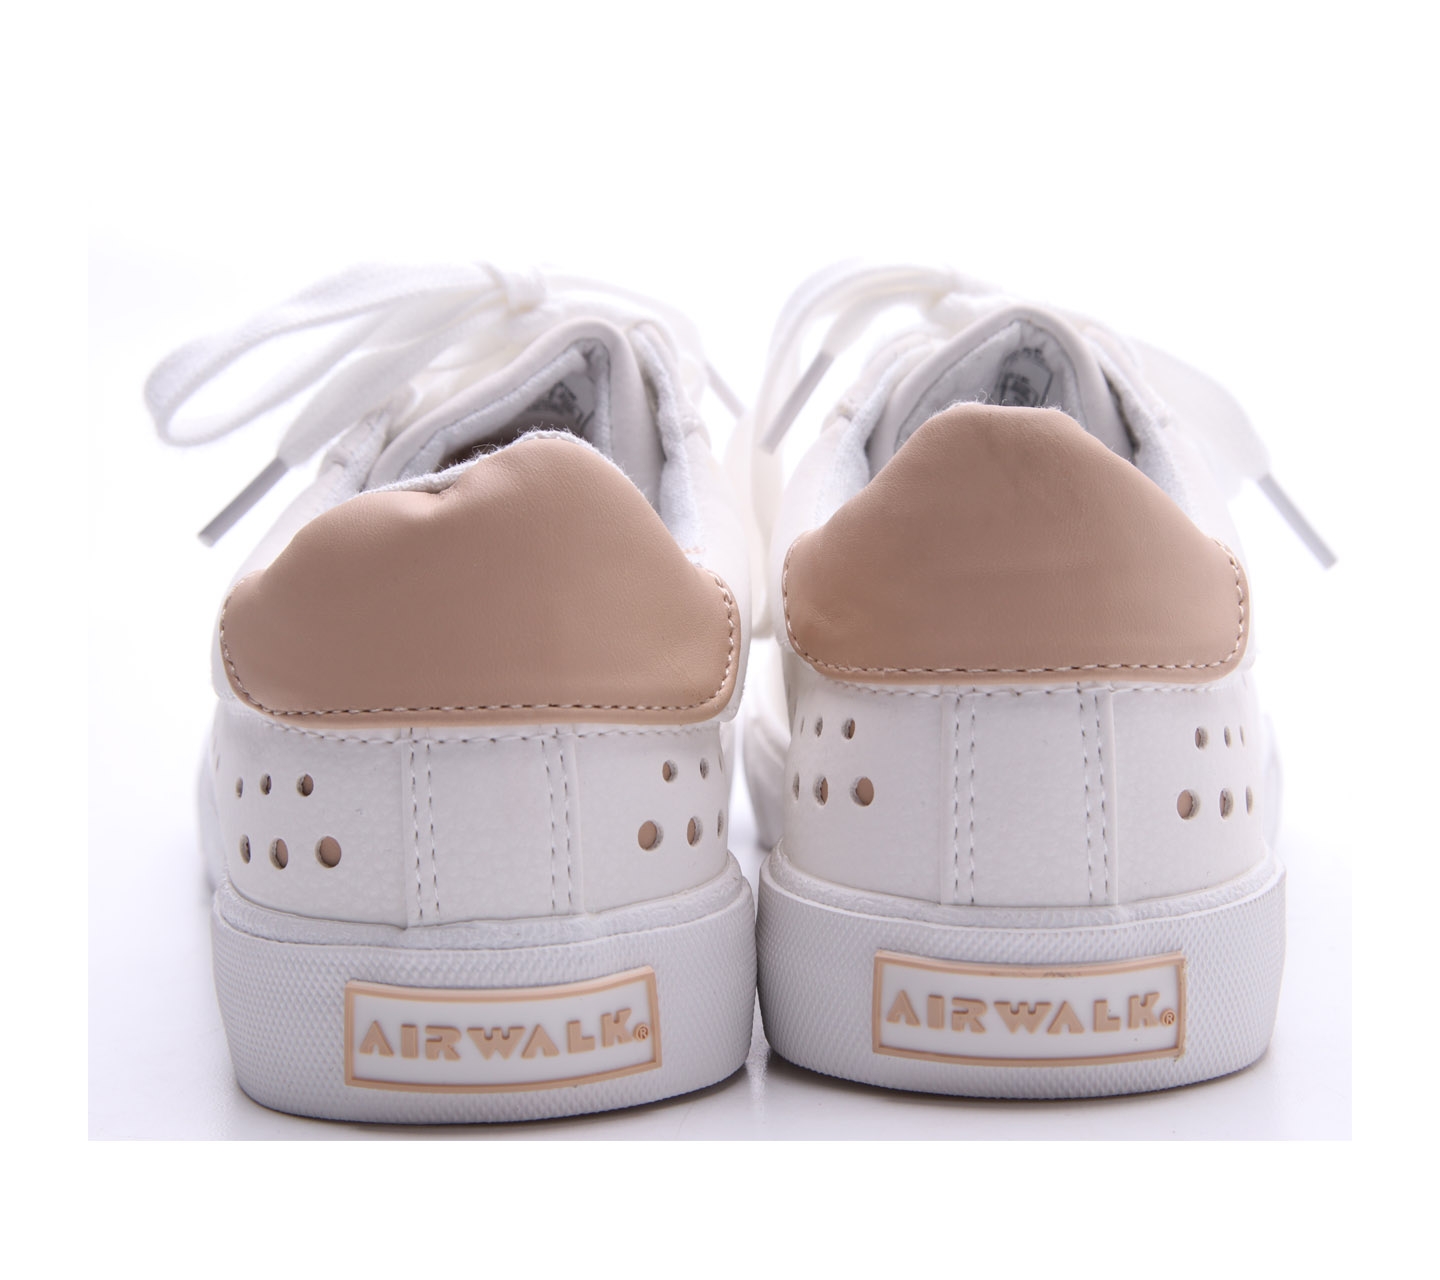 Airwalk White Sneakers